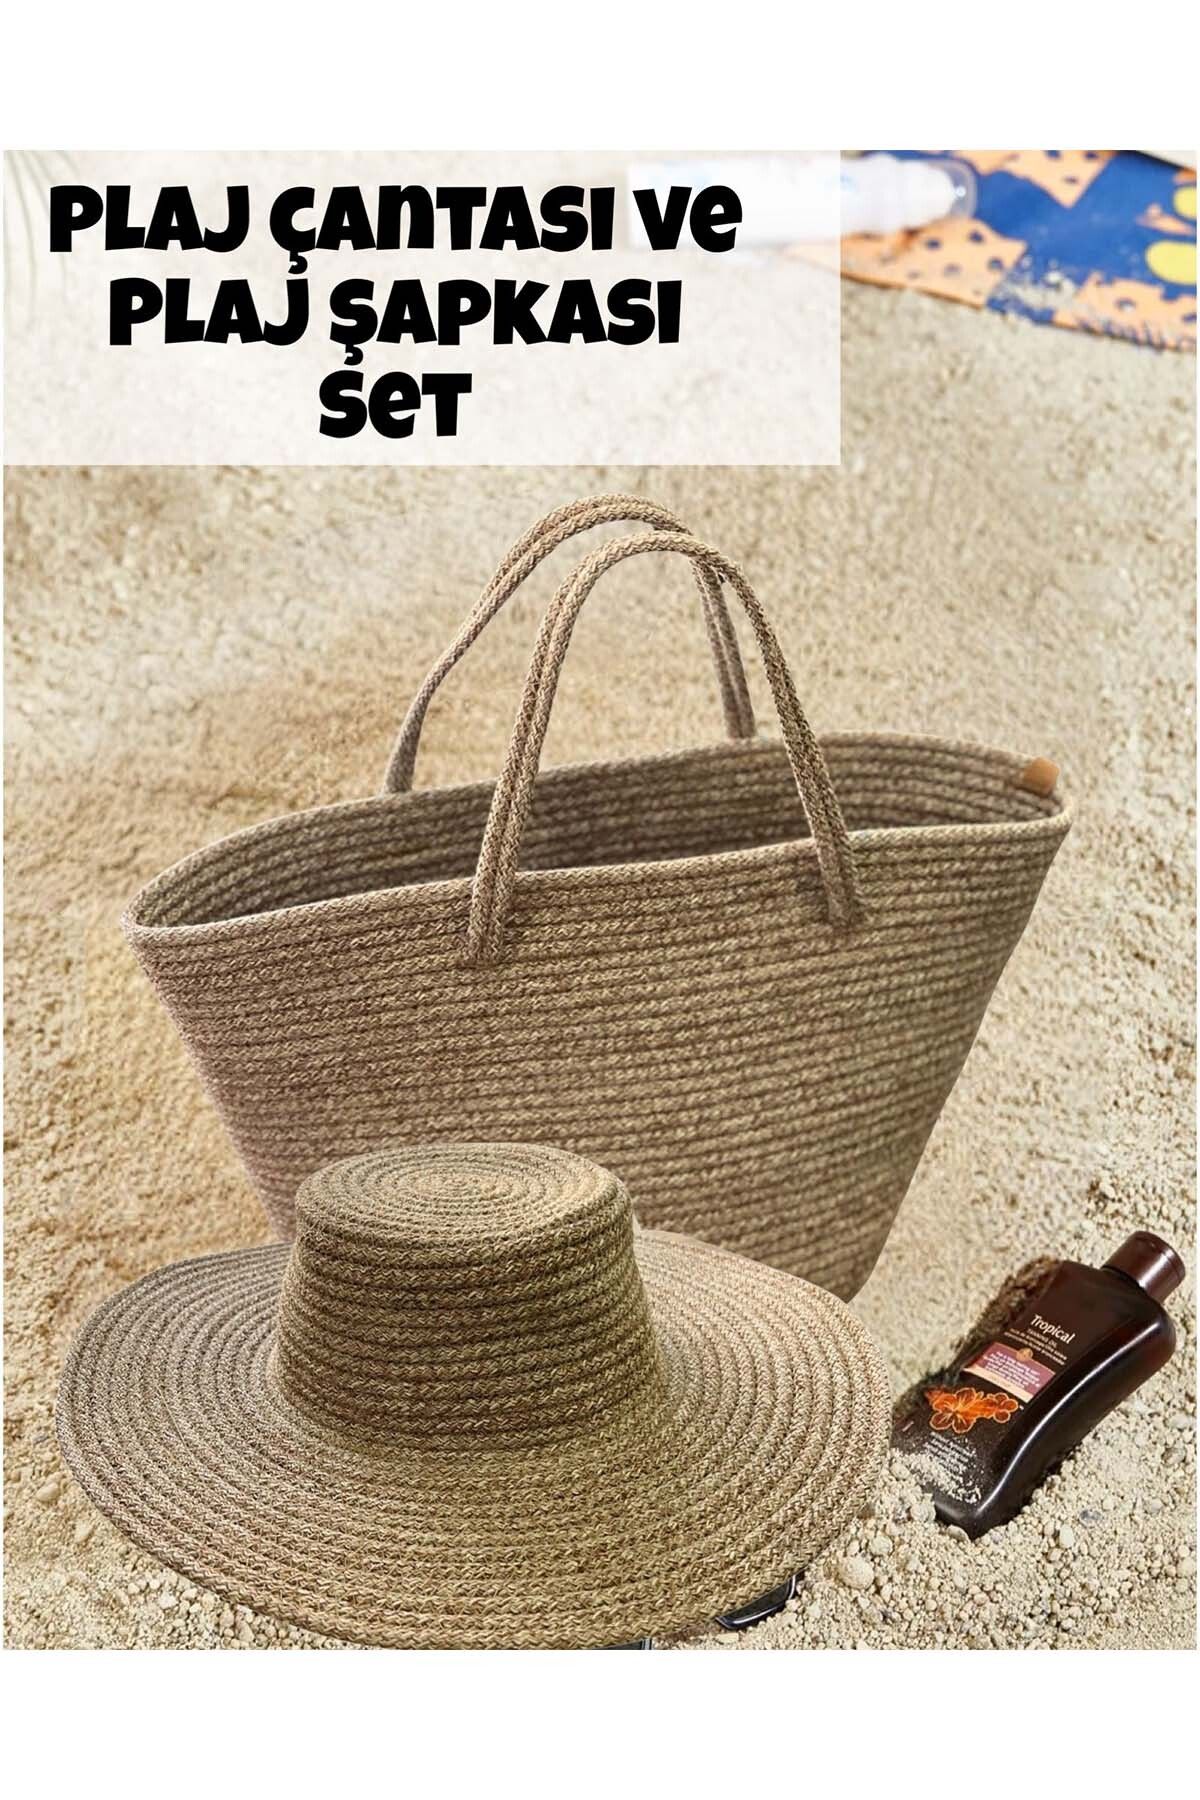 b besely Hasır Jüt Plaj Çantası ve Plaj Şapkası Seti Yazlık Şapka Yazlık Çanta Yıkanabilir